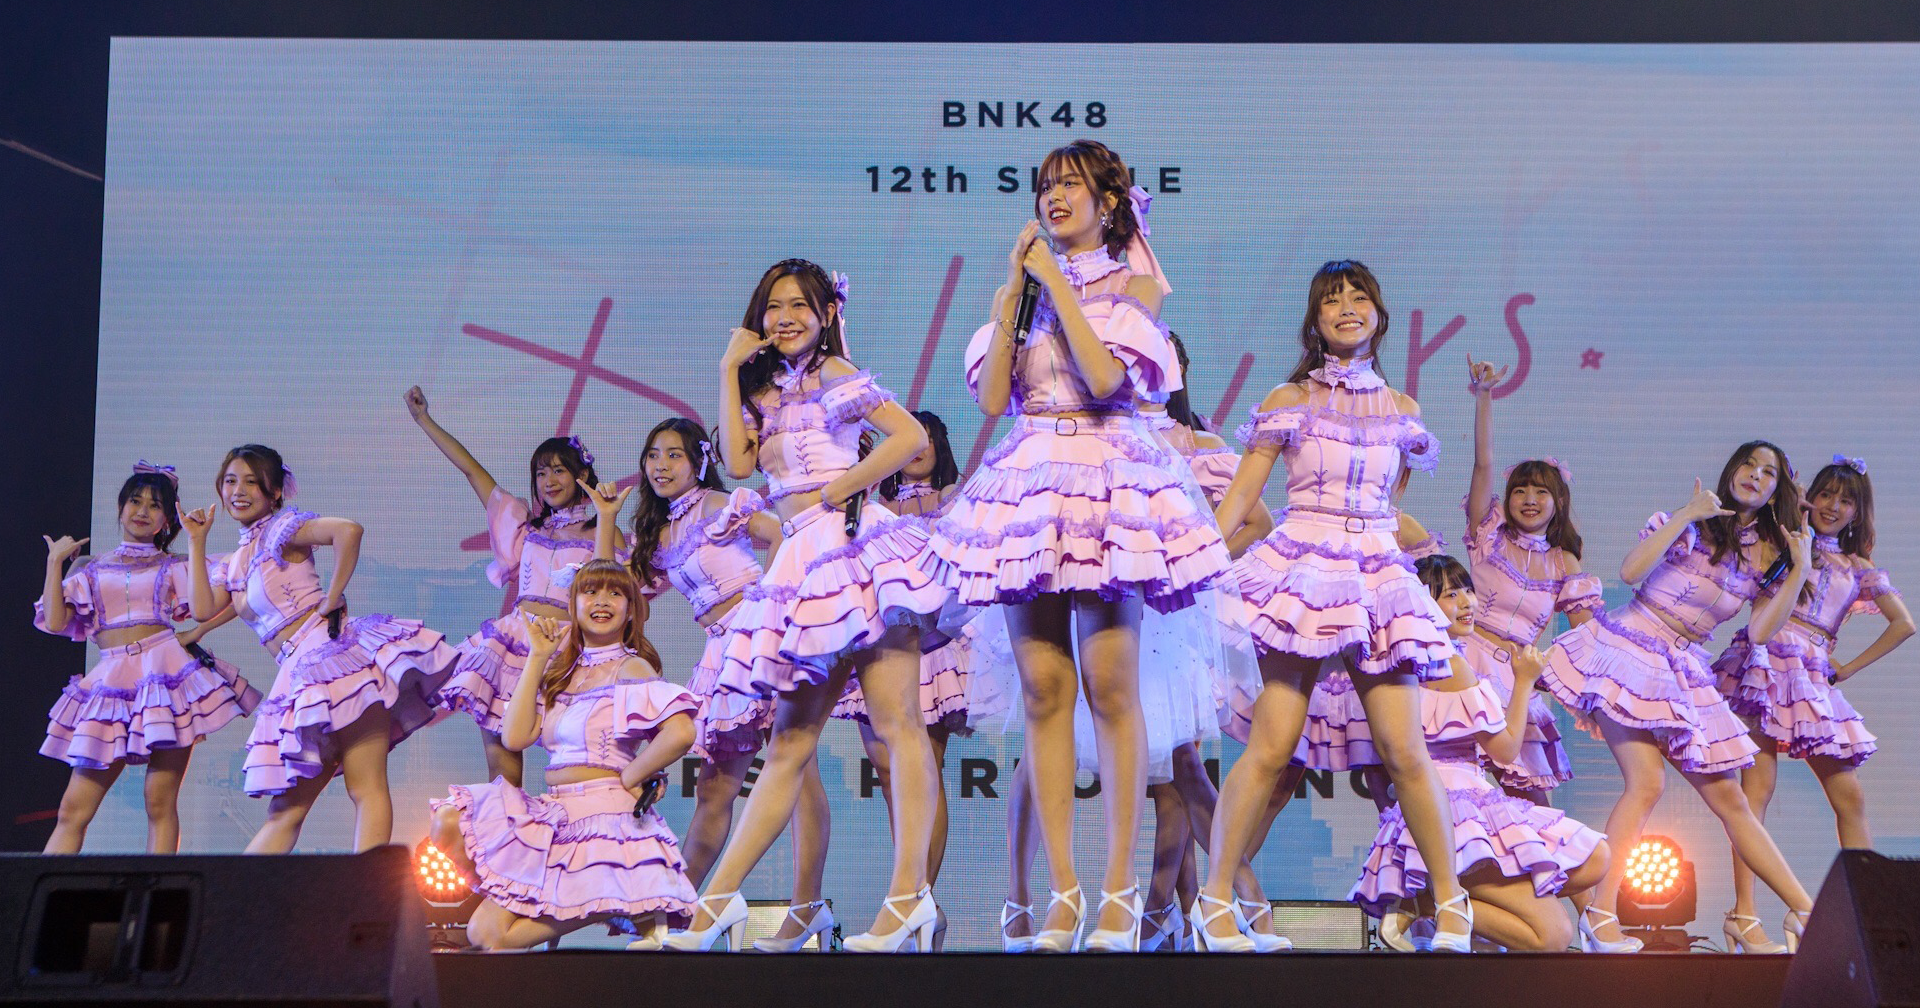 บทเพลงแด่เด็กสาวผู้ที่ยังคงความเชื่อมั่นในฝันของตัวเอง จาก BNK48 12th Single ‘Believers’ First Performance